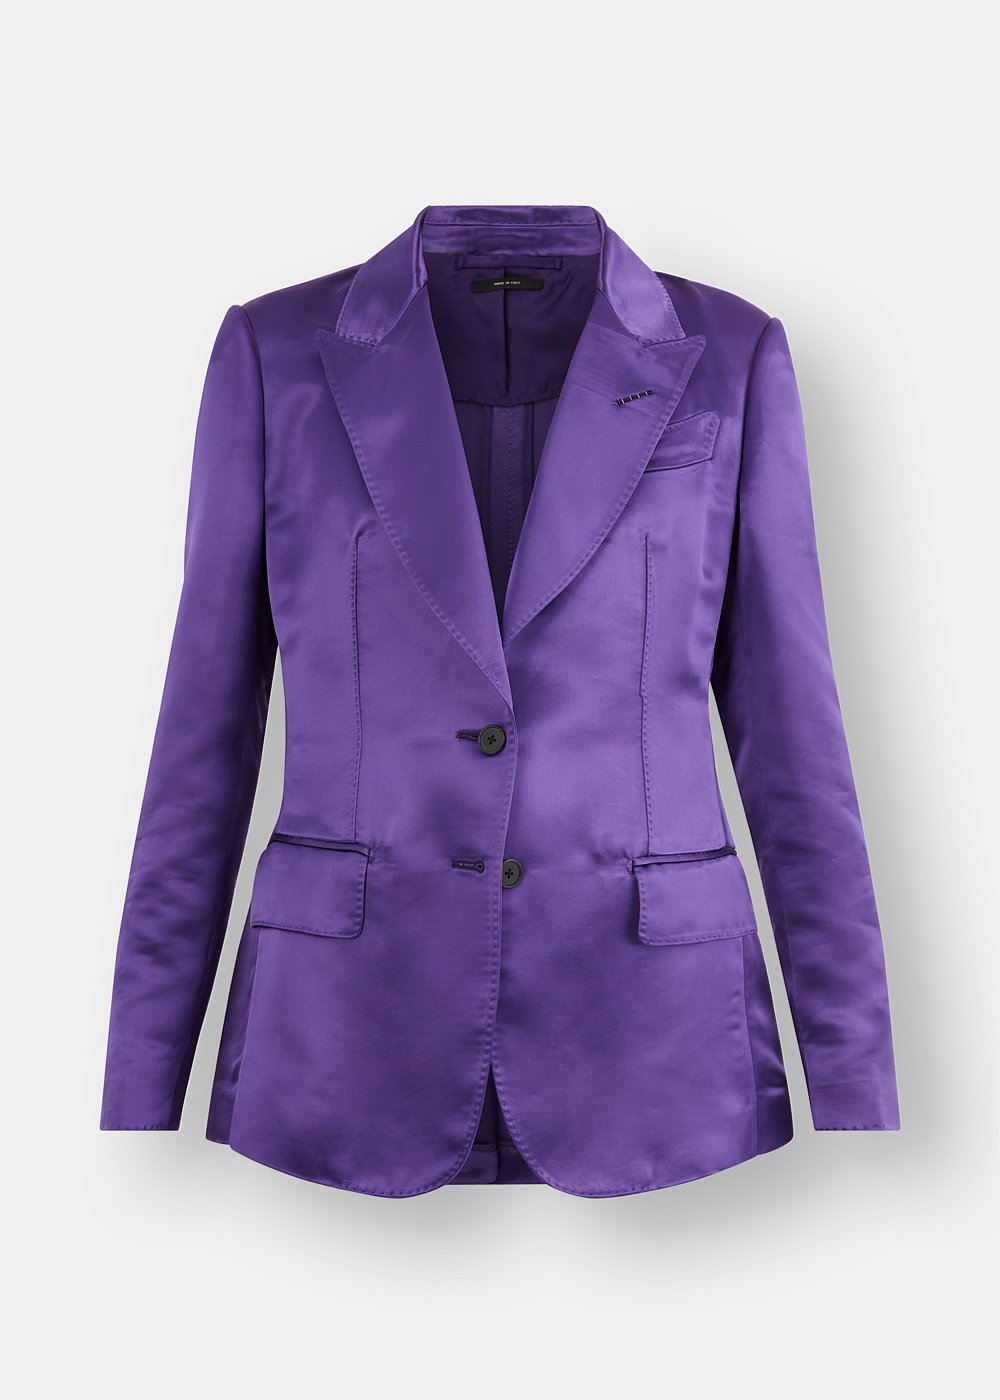 purple jacket australia